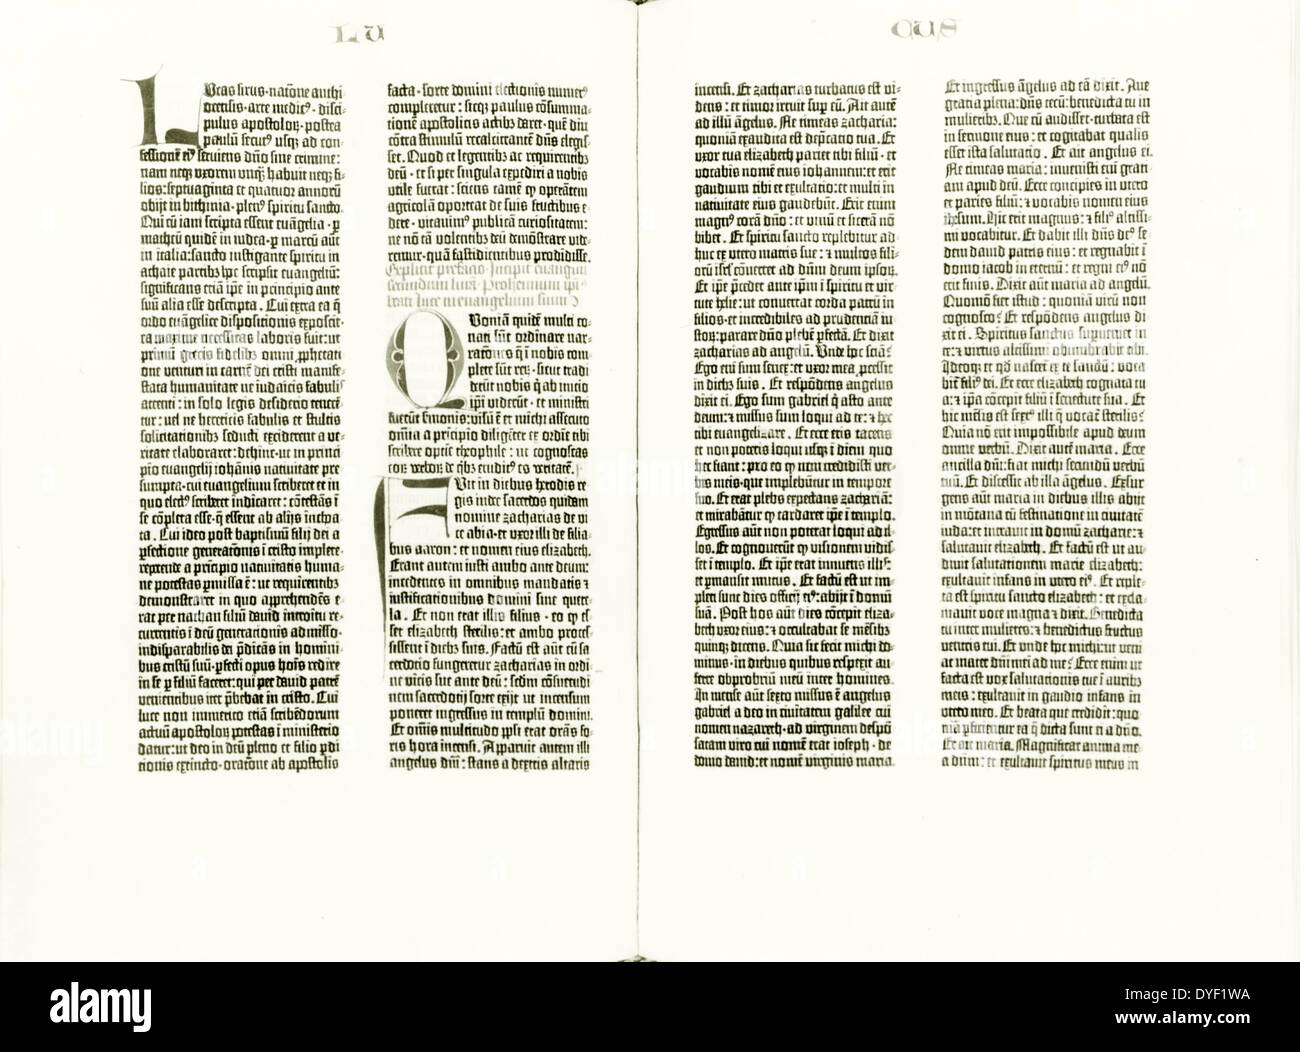 La Bibbia di Gutenberg ha aperto all'inizio del Vangelo di Luca pubblicato 1454 o 1455 Foto Stock